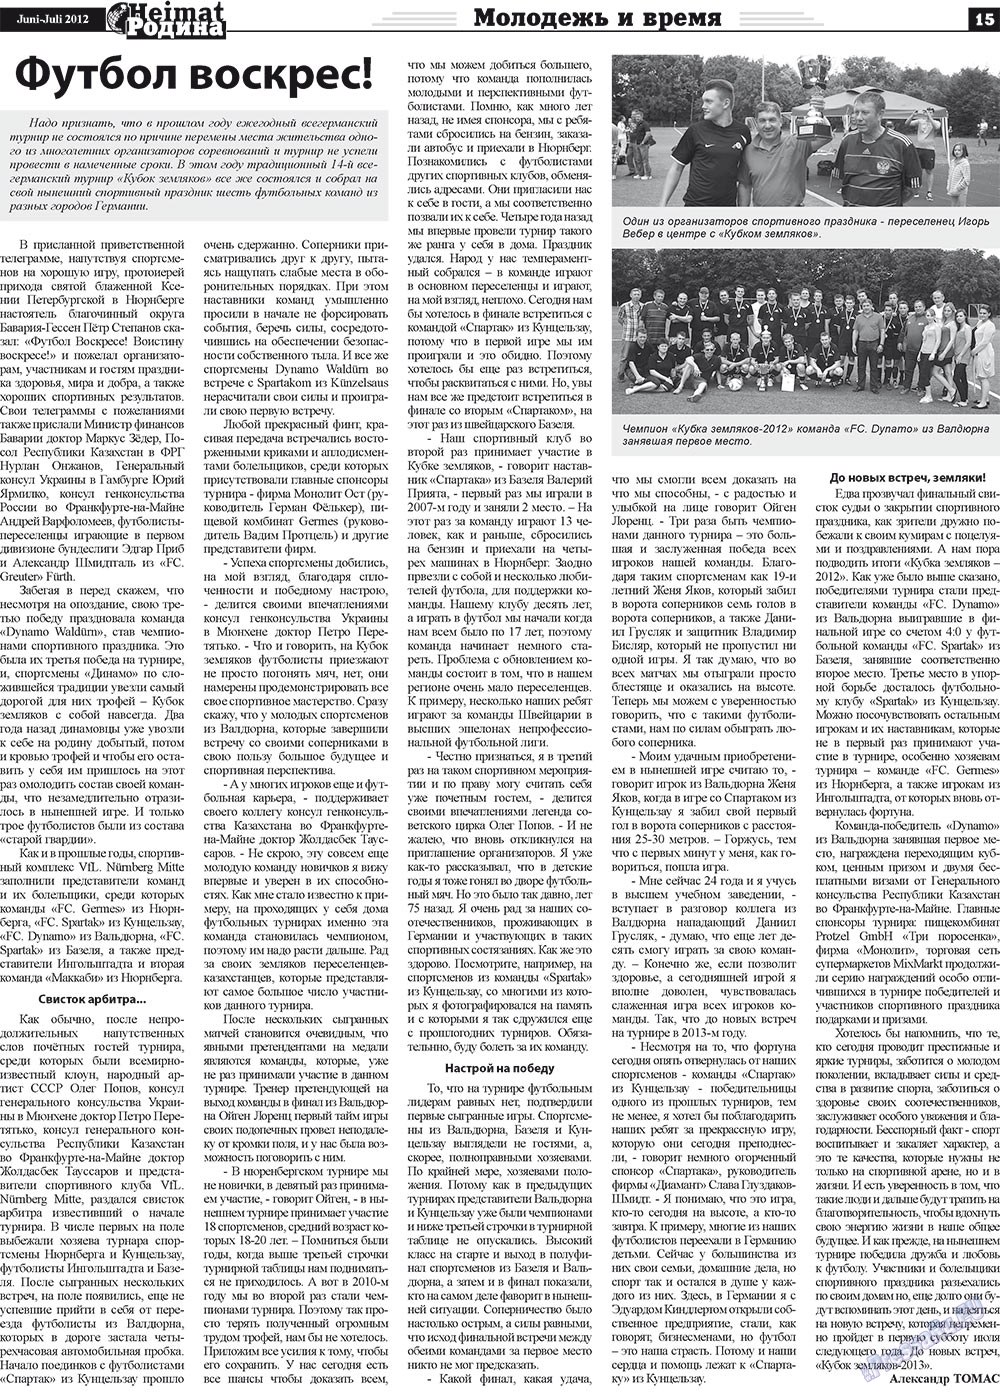 Heimat-Родина (газета). 2012 год, номер 5, стр. 15